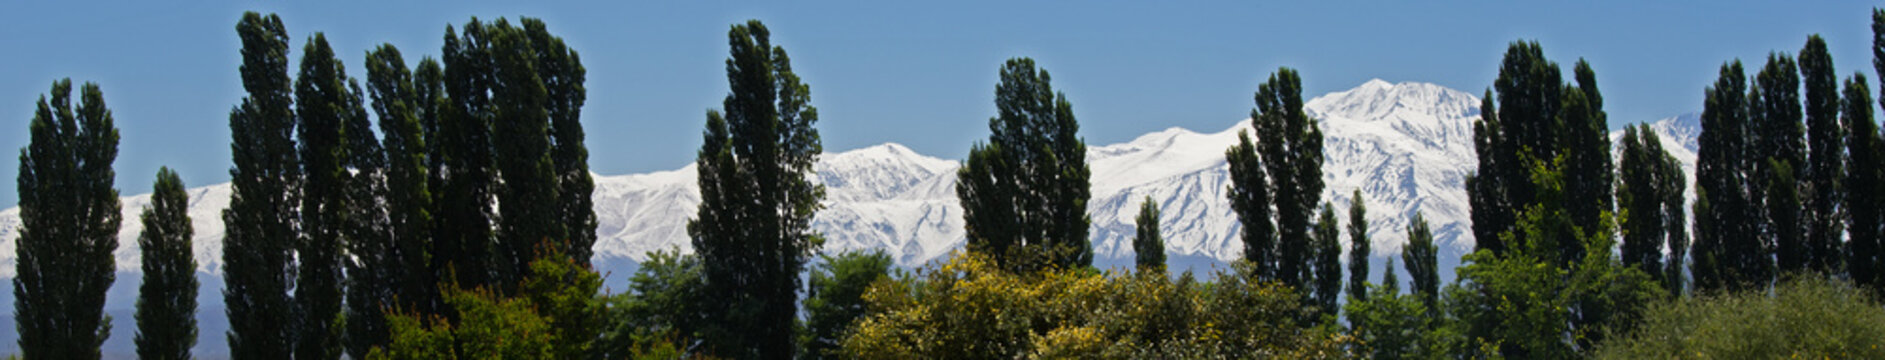 Andes & Treeline, Lujan De Cuyo,Mendoza